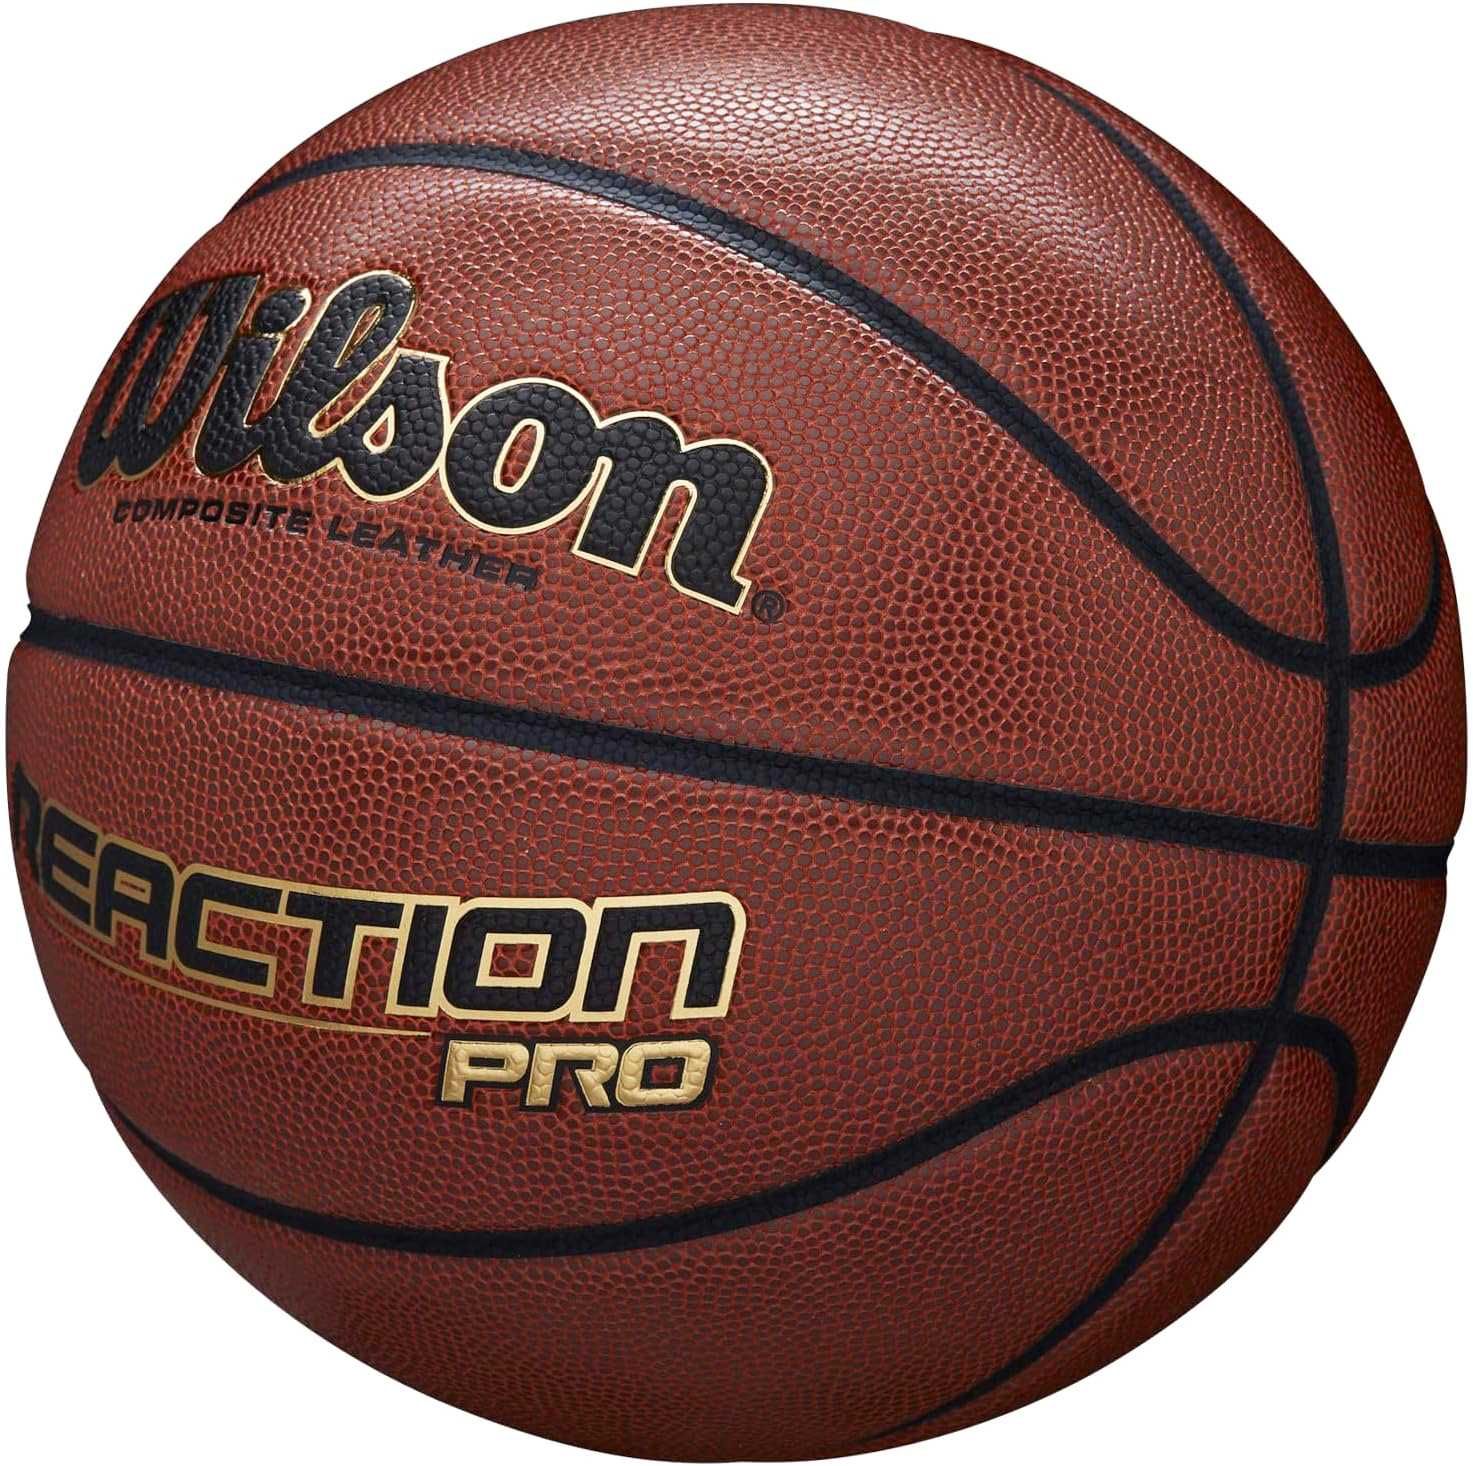 Баскетбольний м'яч Wilson Reaction Pro. Розміри 5, 6, 7. Вілсон